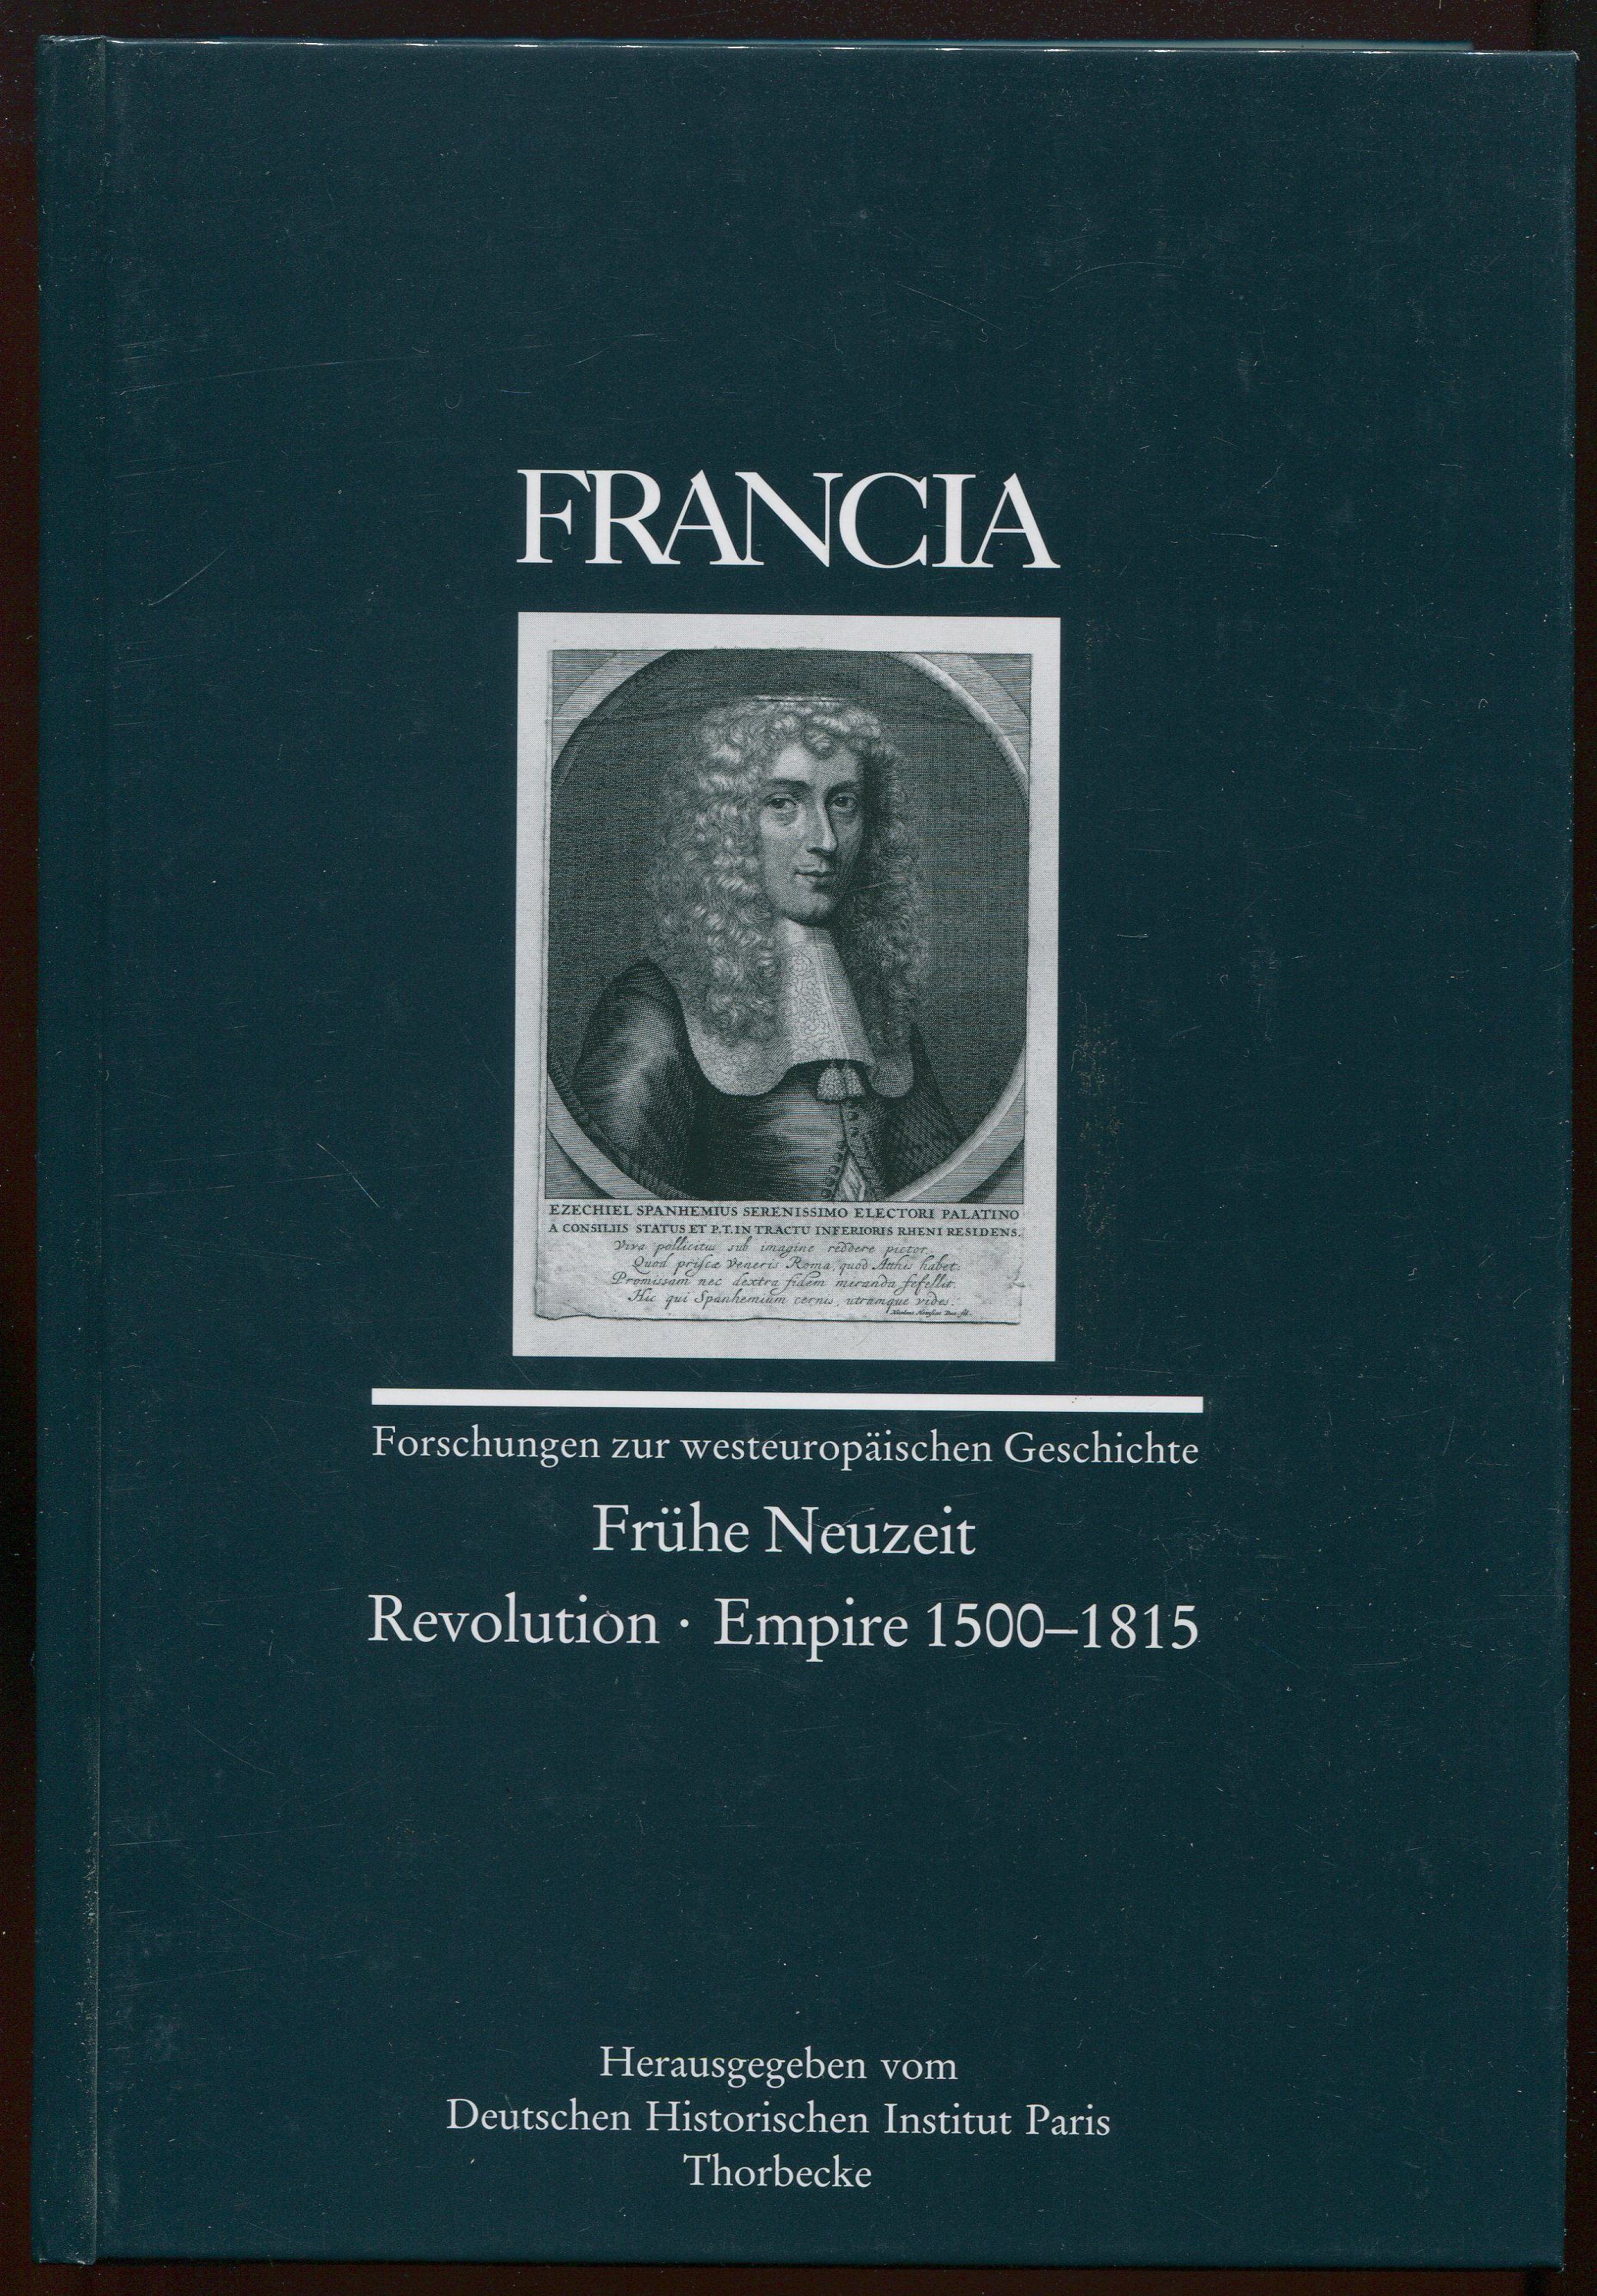 Francia Band 34/2 (2007) - Frühe Neuzeit. Revolution. Empire 1500-1815 - Deutschen Historischen Institut Paris (herausgegeben vom)